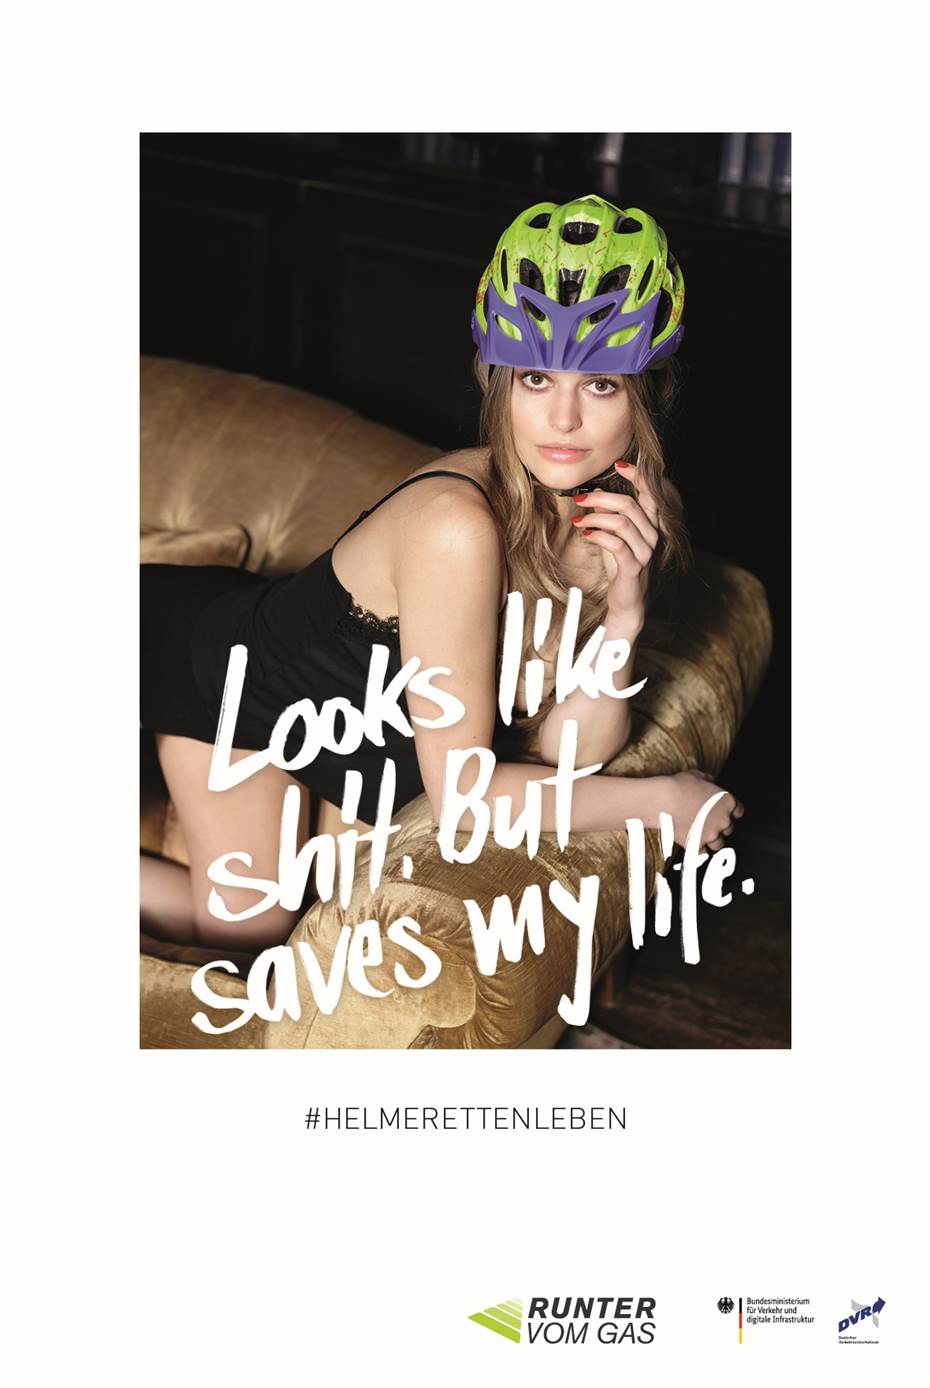 Umstrittene Helm-Kampagne: Sexistisch oder humorvoll?